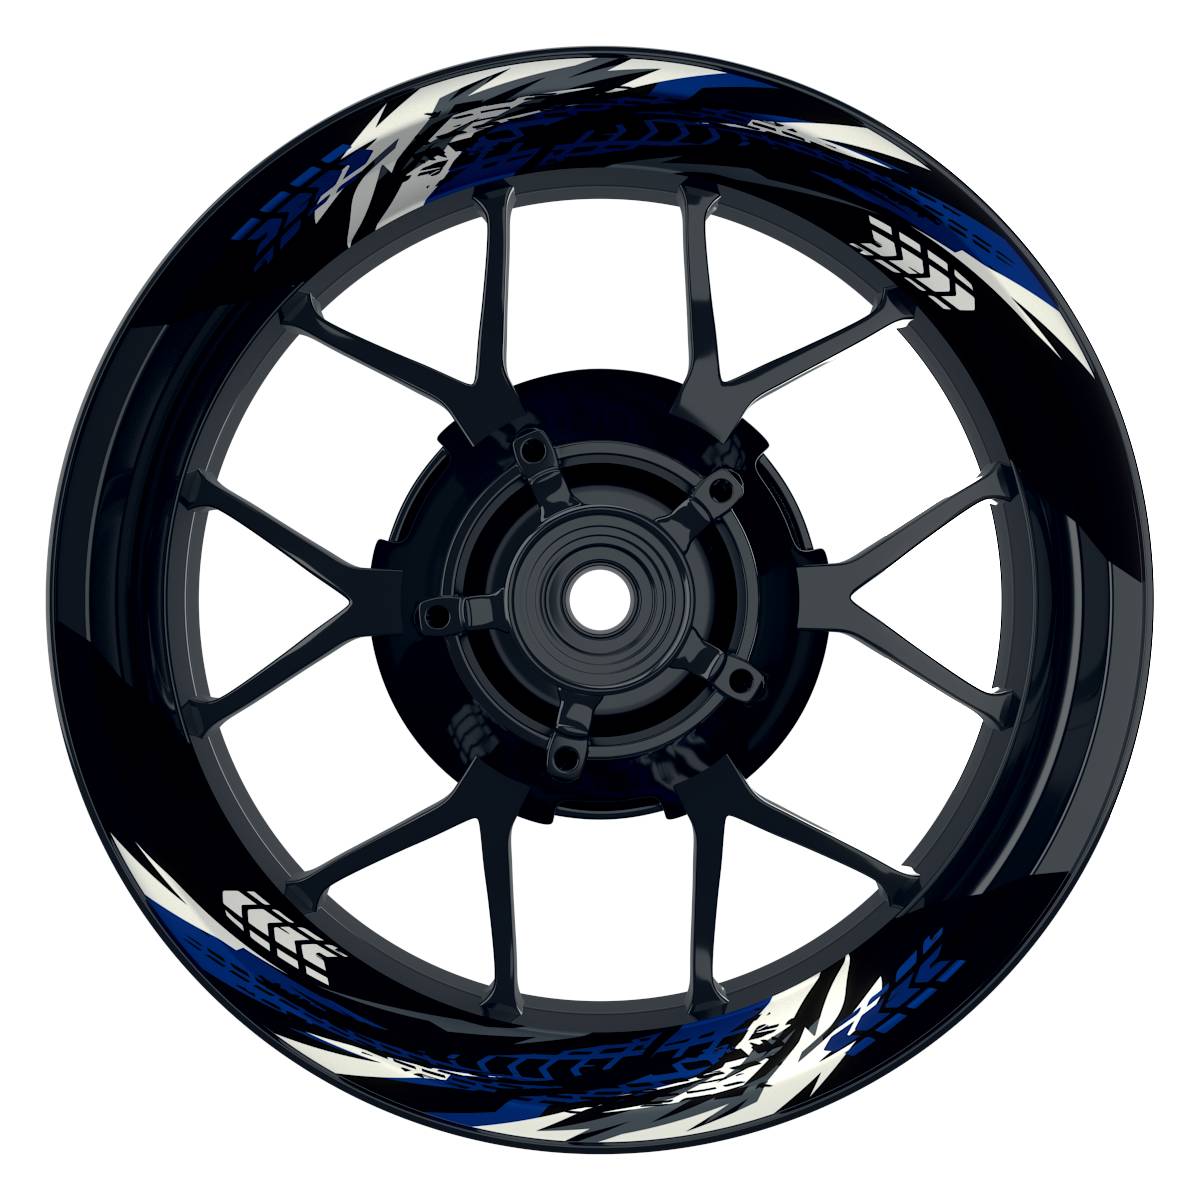 Tires schwarz blau Frontansicht